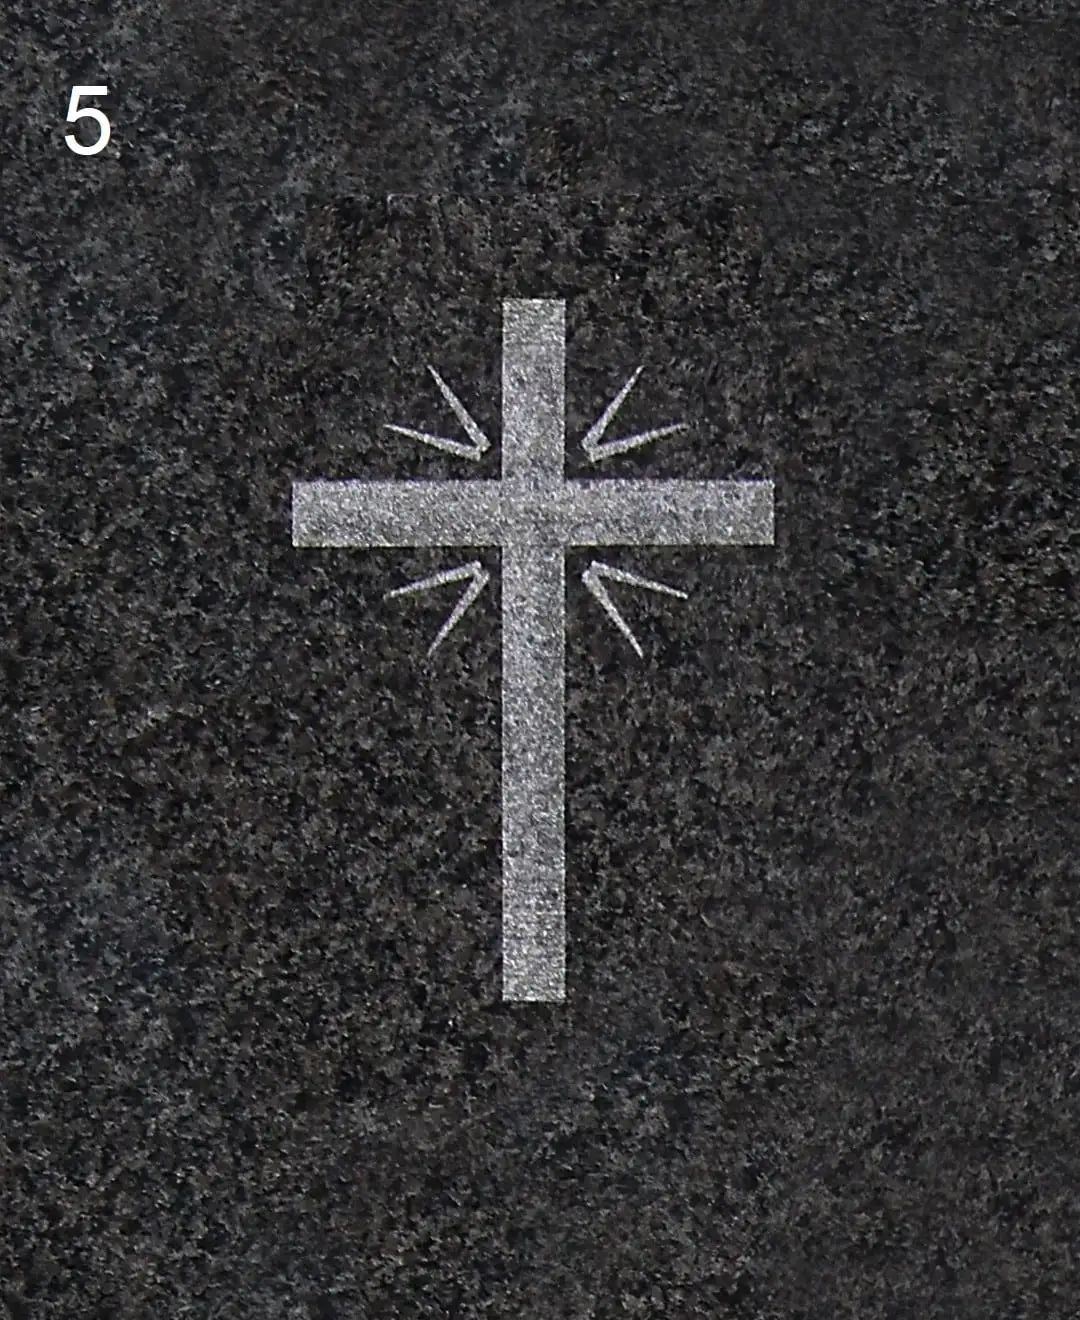 Krzyż - Nagrobki Bielsko-Biała